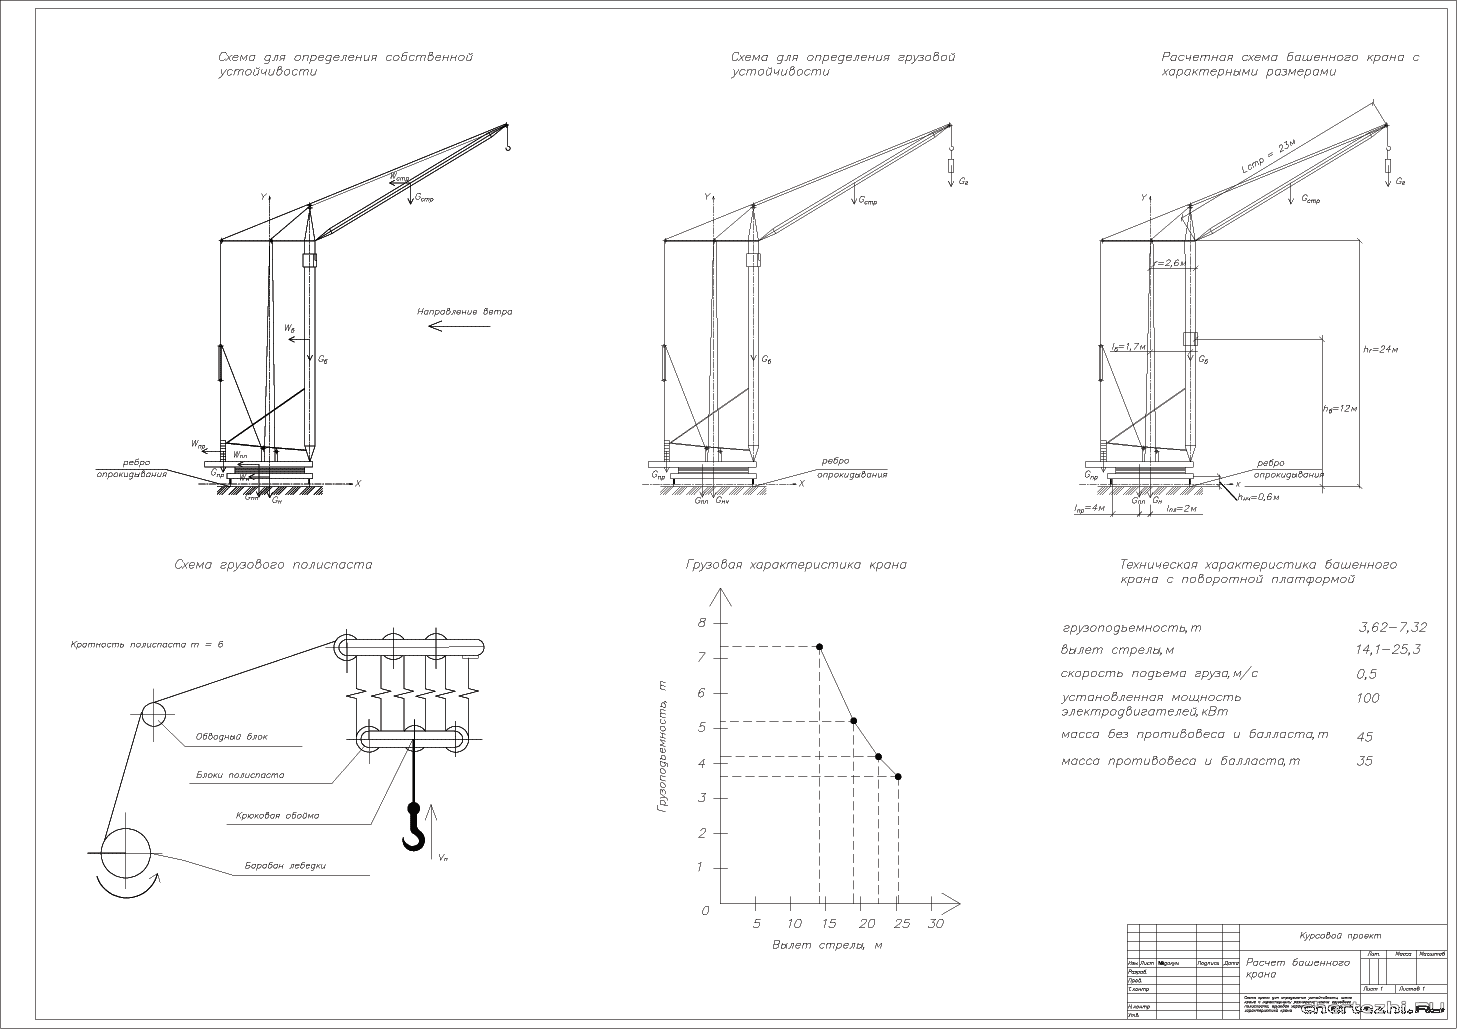 Курсовой проект - Расчет башенного крана